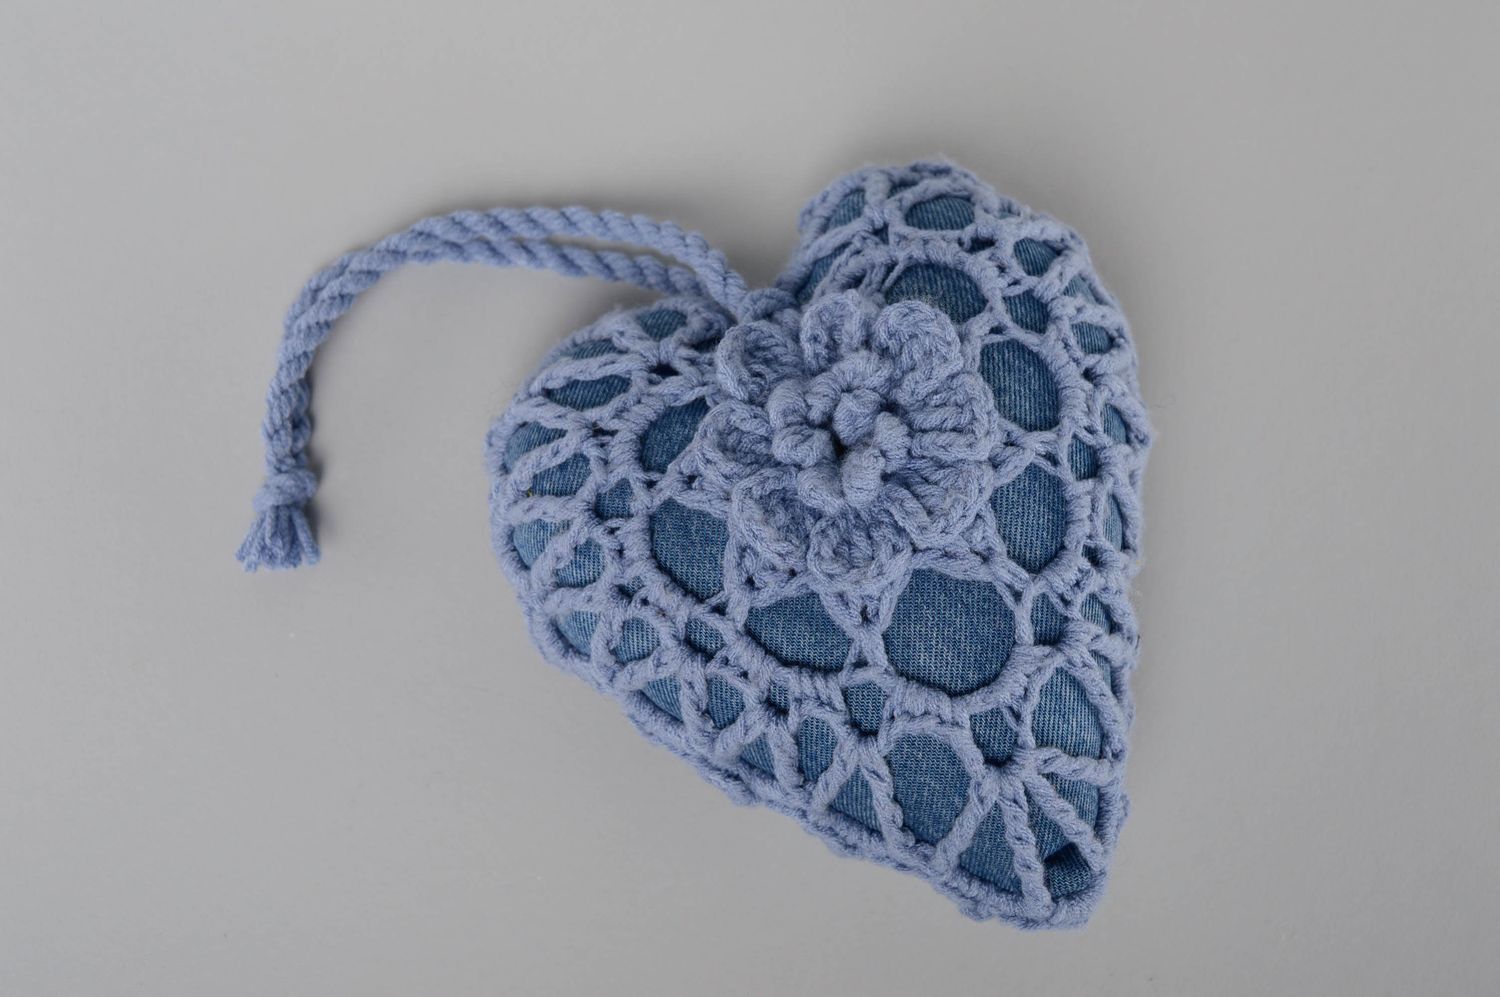 Интерьерная подвеска из ниток ручной работы Сердце синее фото 1